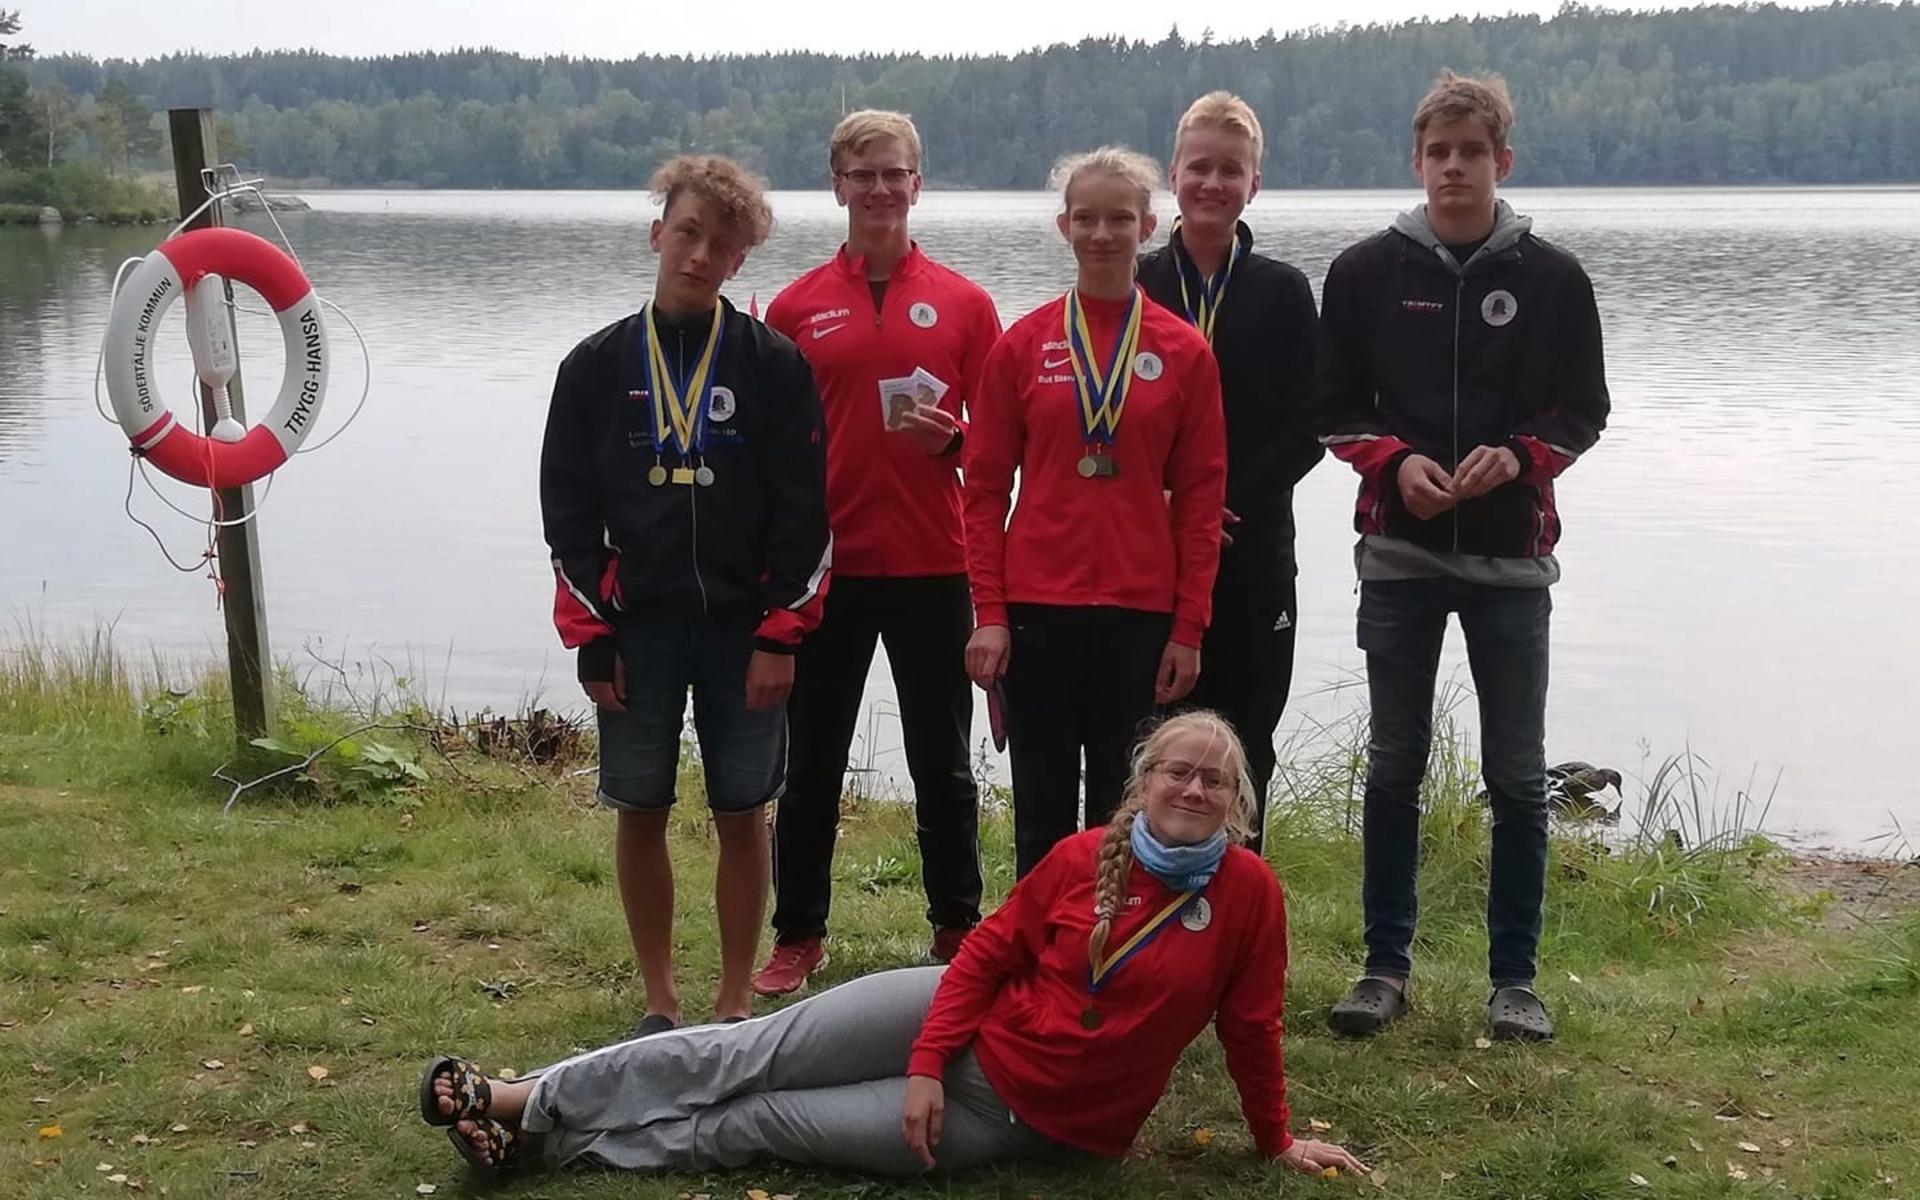 Storm Sivebrant, David Nilsson, Rut Stening, William Falkenström, Sandro Lacko och Emilia Nilsson gjorde fina resultat vid kanot-SM för maraton.